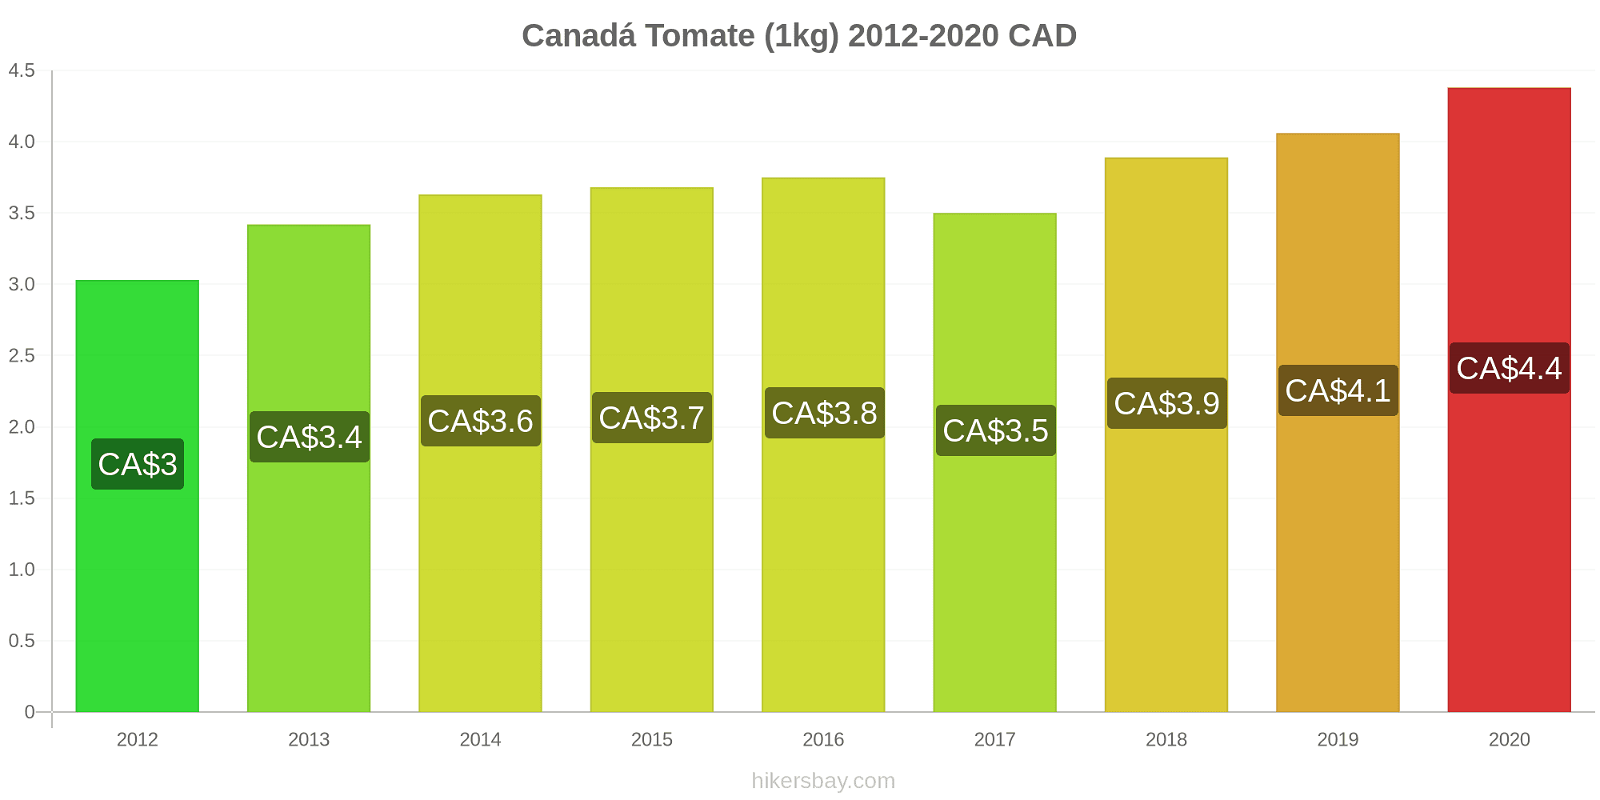 Canadá variação de preço Tomate (1kg) hikersbay.com